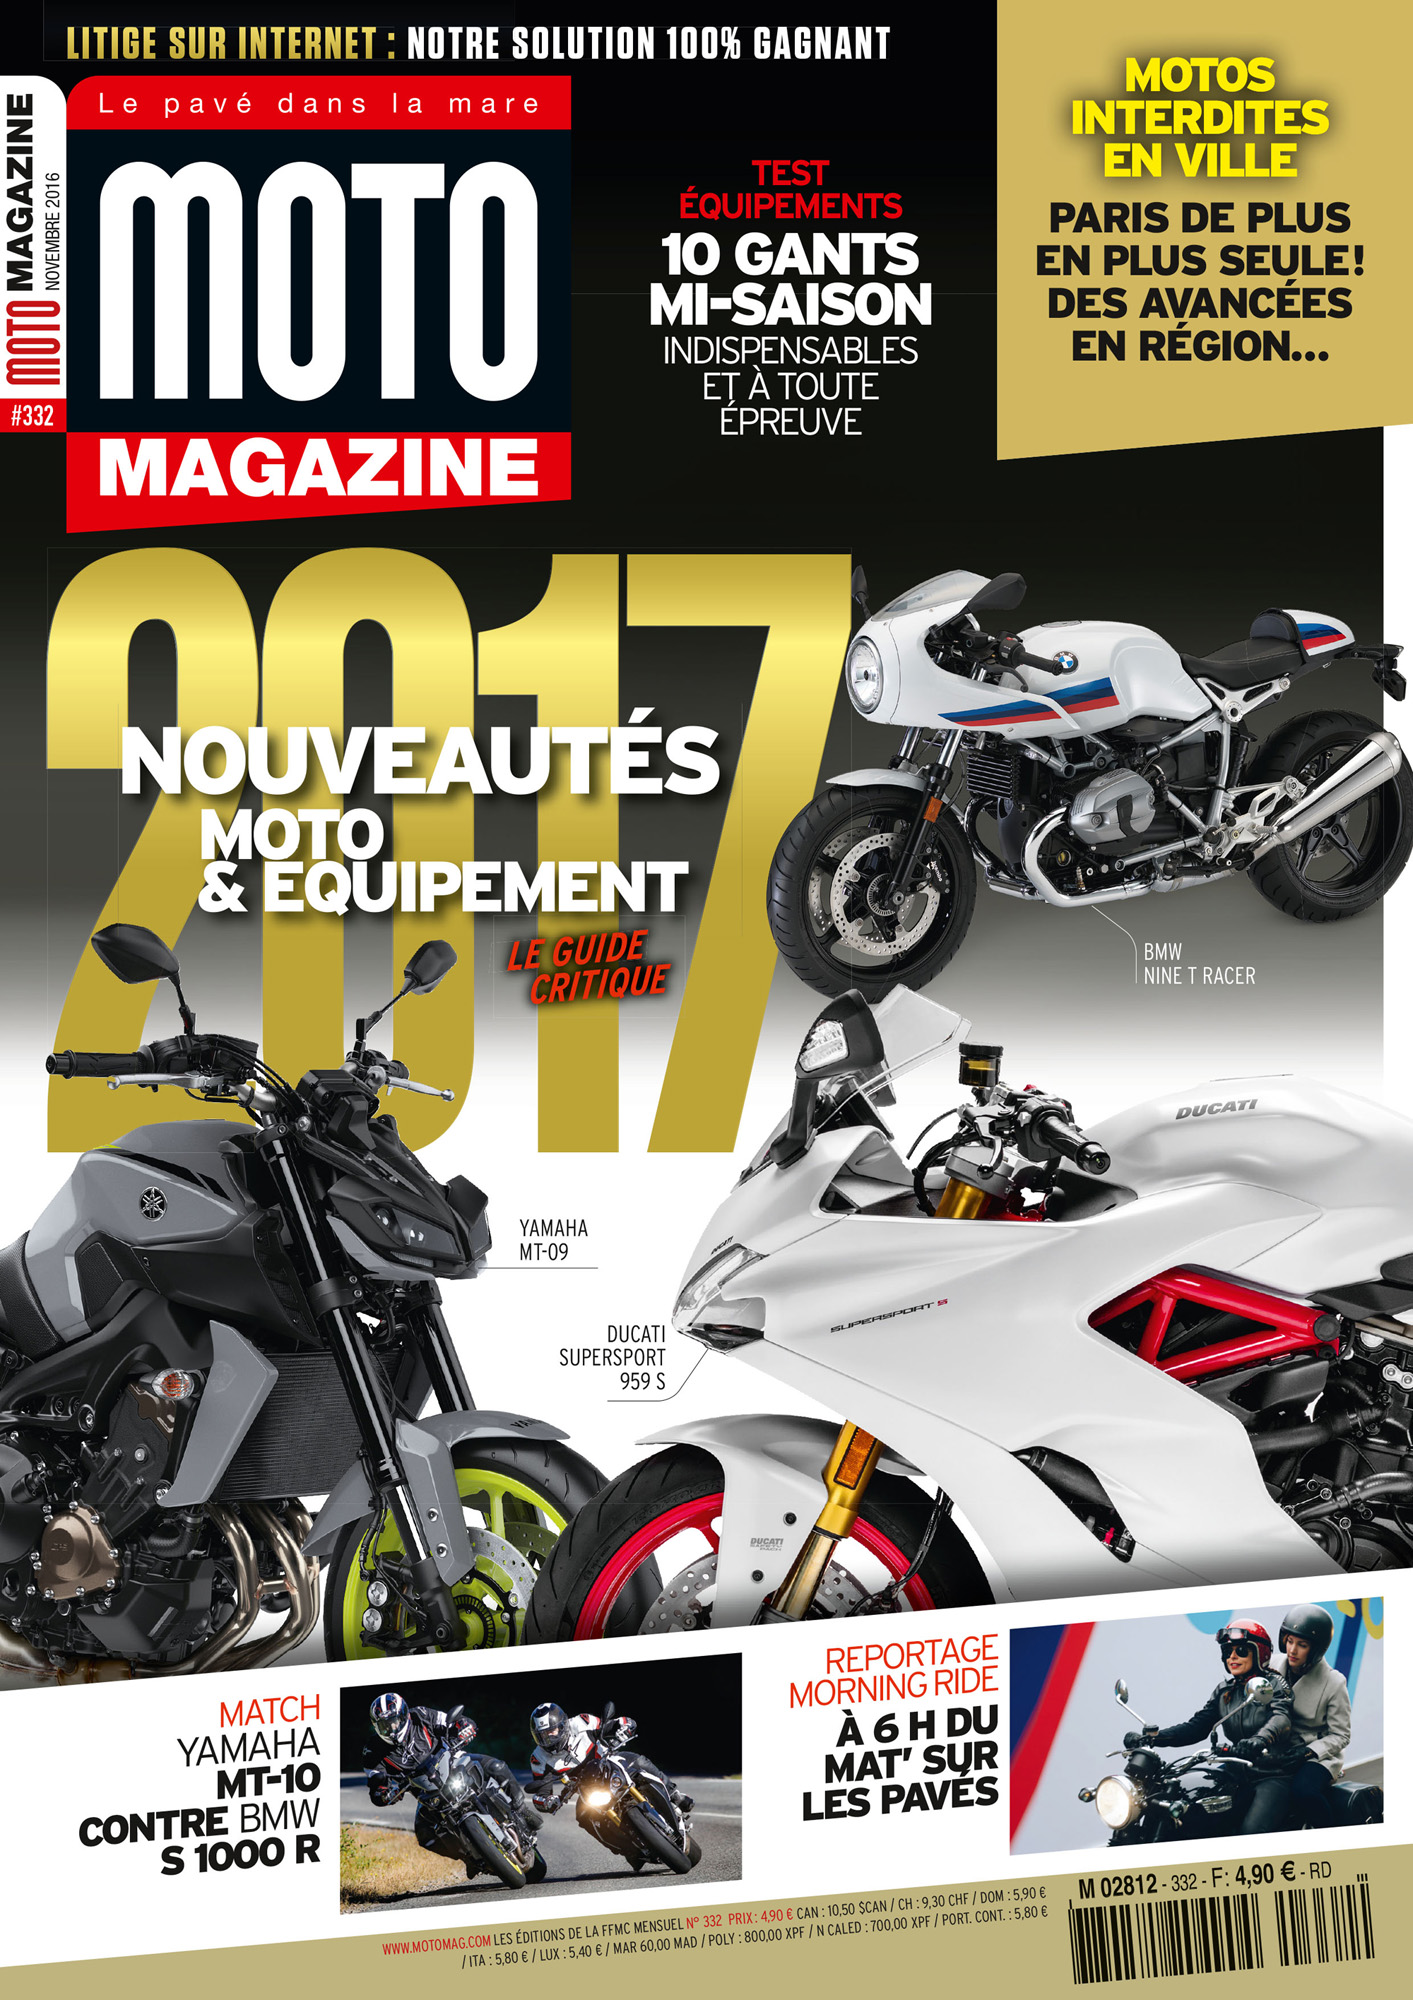 Découvrez Moto Magazine de novembre 2016 : nouveautés (...)